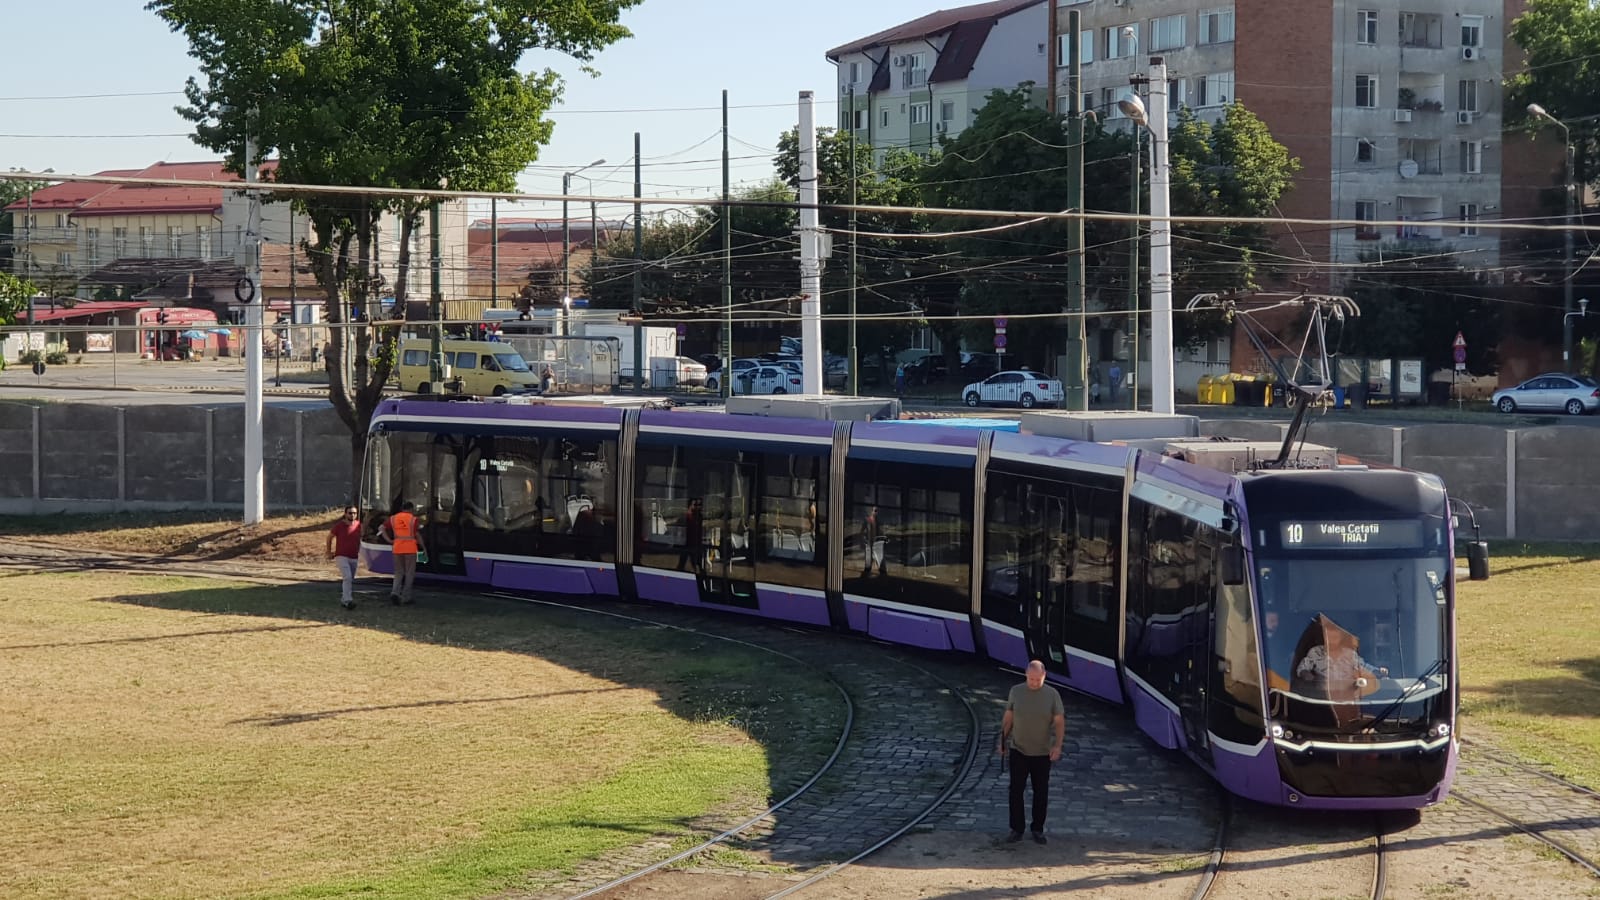 tramvai tehnologizat Timisoara